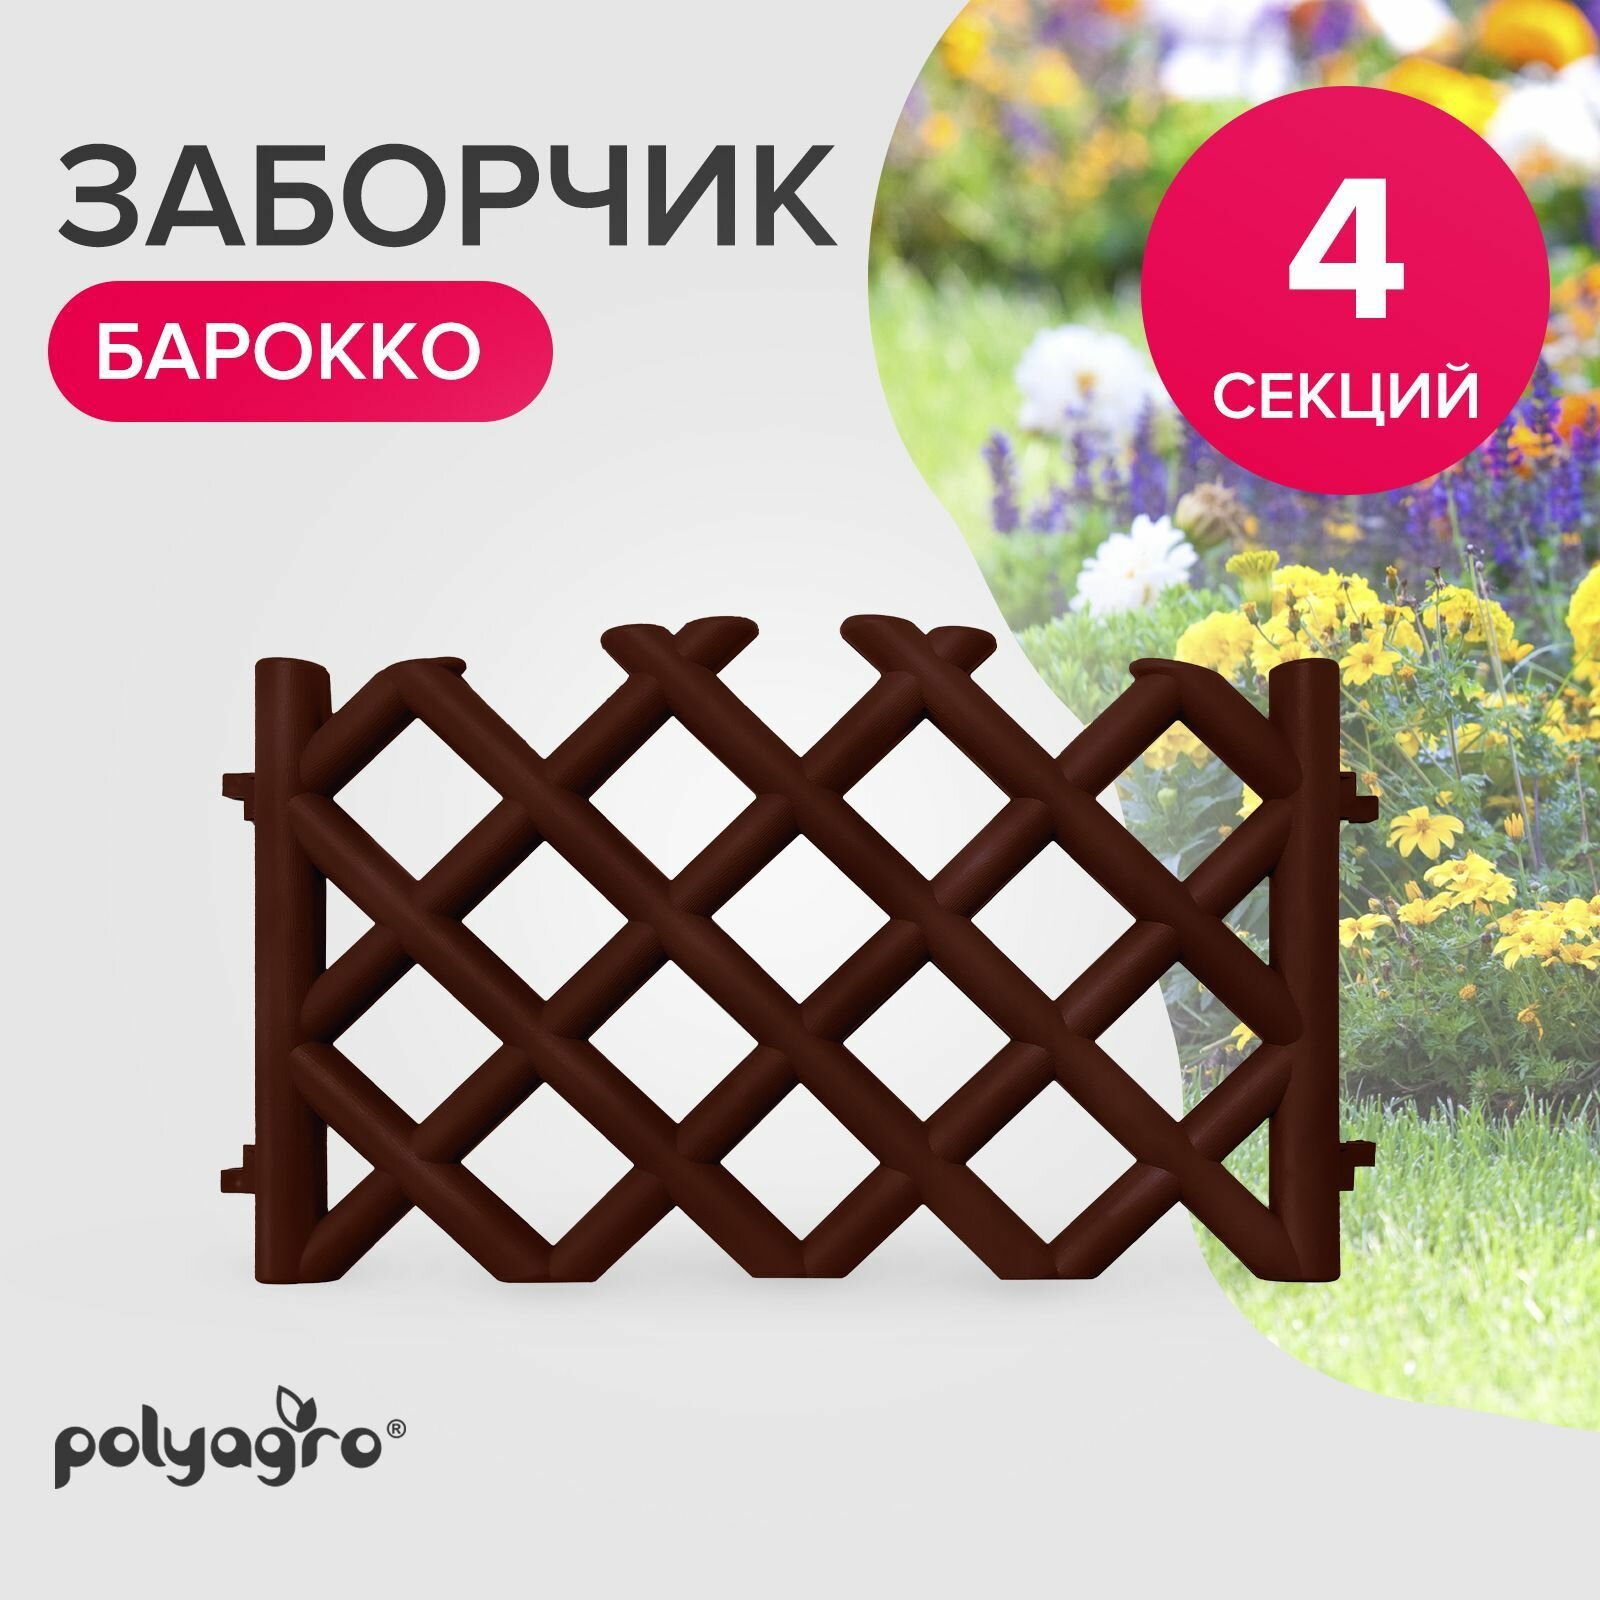 Заборчик декоративный для сада 278 м (высота 41 см) бордюр садовый Polyagro Барокко шоколад